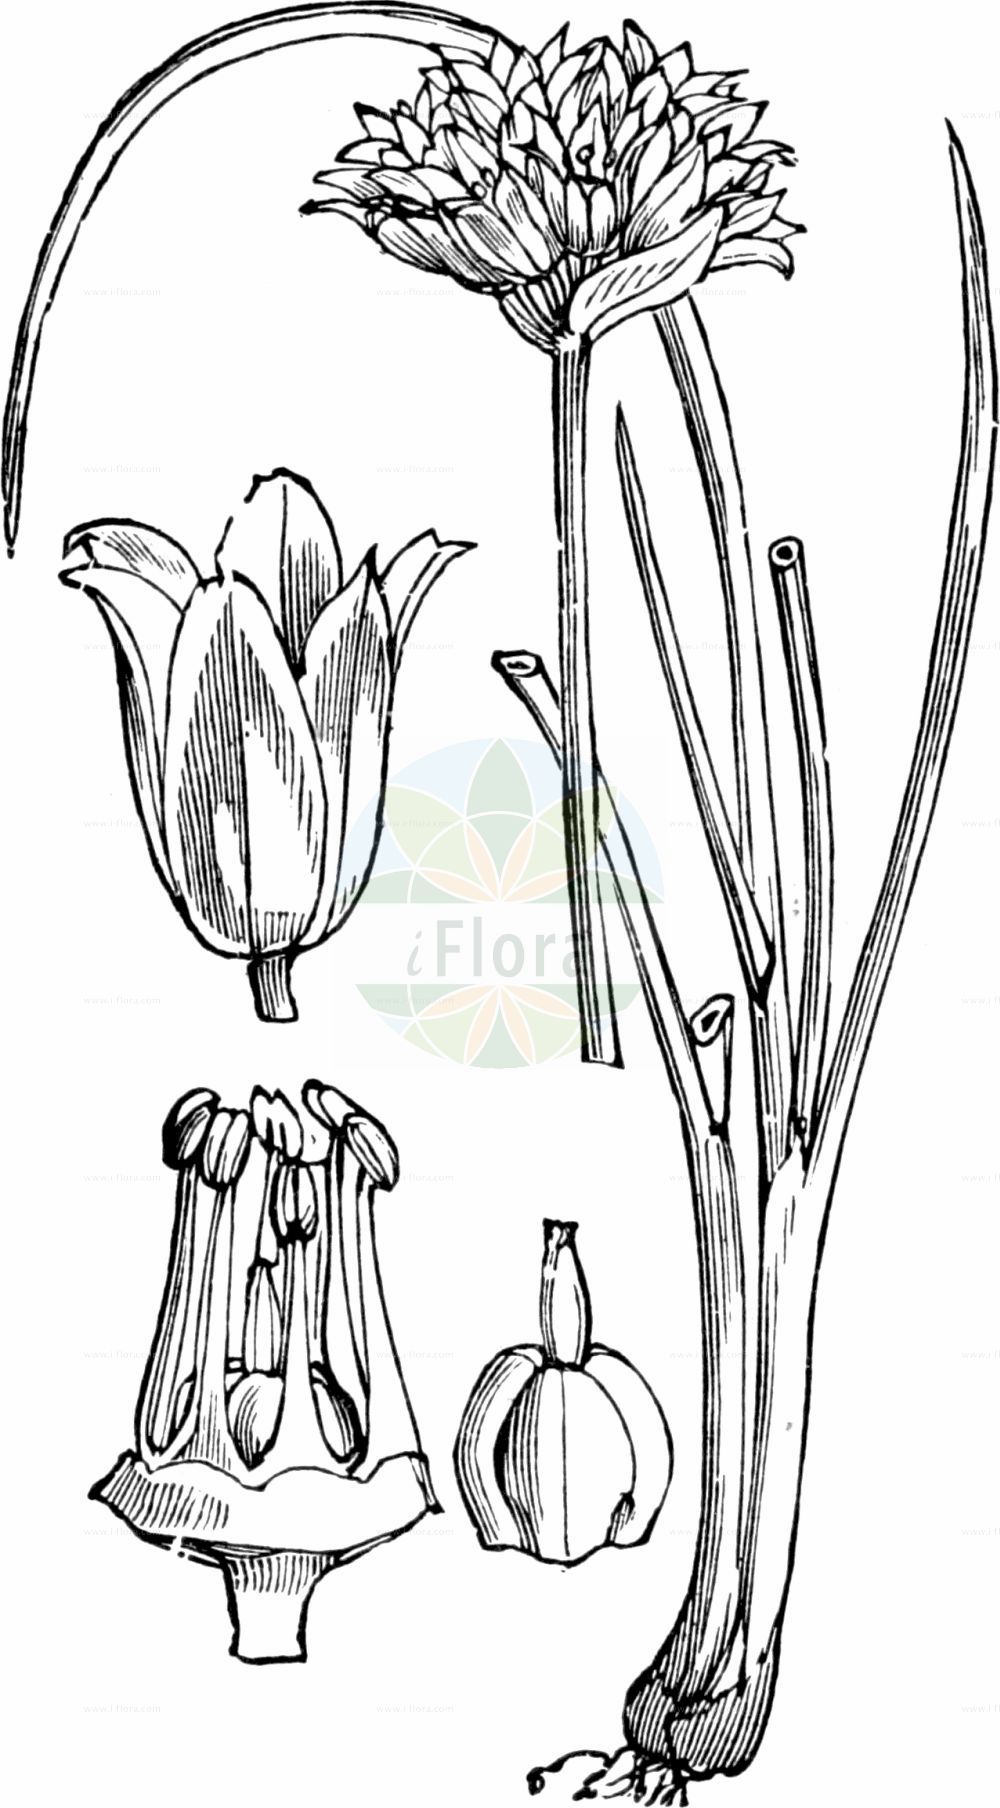 Historische Abbildung von Allium schoenoprasum (Gewöhnlicher Schnitt-Lauch - Chives). Das Bild zeigt Blatt, Bluete, Frucht und Same. ---- Historical Drawing of Allium schoenoprasum (Gewöhnlicher Schnitt-Lauch - Chives). The image is showing leaf, flower, fruit and seed.(Allium schoenoprasum,Gewöhnlicher Schnitt-Lauch,Chives,Allium schoenoprasum,Ascalonicum schoenoprasum,Cepa schoenoprasa,Porrum schoenoprasum,Porrum sibiricum,Schoenissa schoenoprasa,Schoenoprasum vulgare,Gewoehnlicher Schnitt-Lauch,Chives,Wild Chives,Allium,Lauch,Leek,Amaryllidaceae,Narzissengewächse,Amaryllis family,Blatt,Bluete,Frucht,Same,leaf,flower,fruit,seed,Fitch et al. (1880))